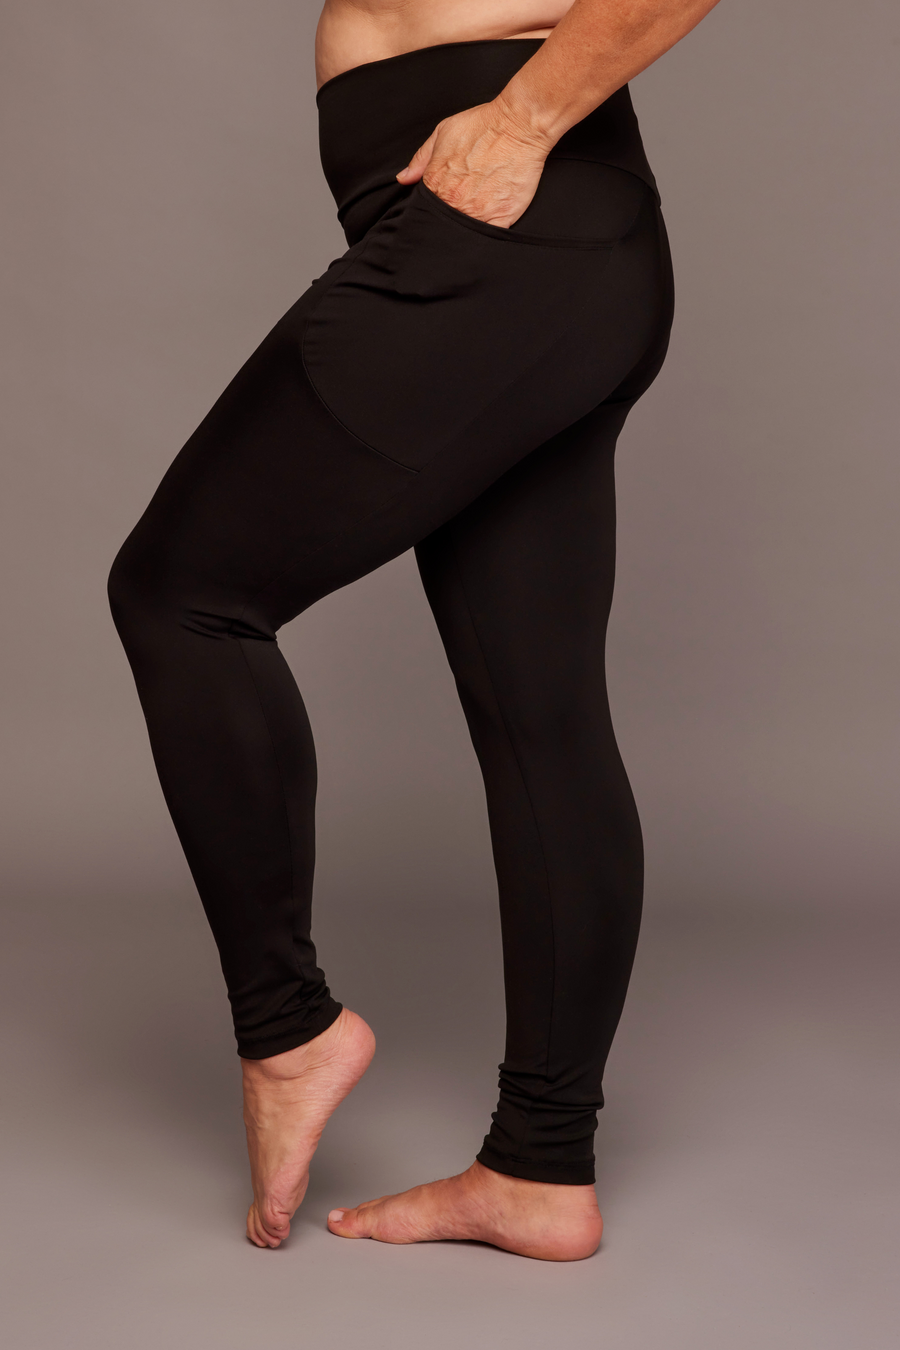 Legging confortable uni noir taille haute avec poches fabriqué au Québec.